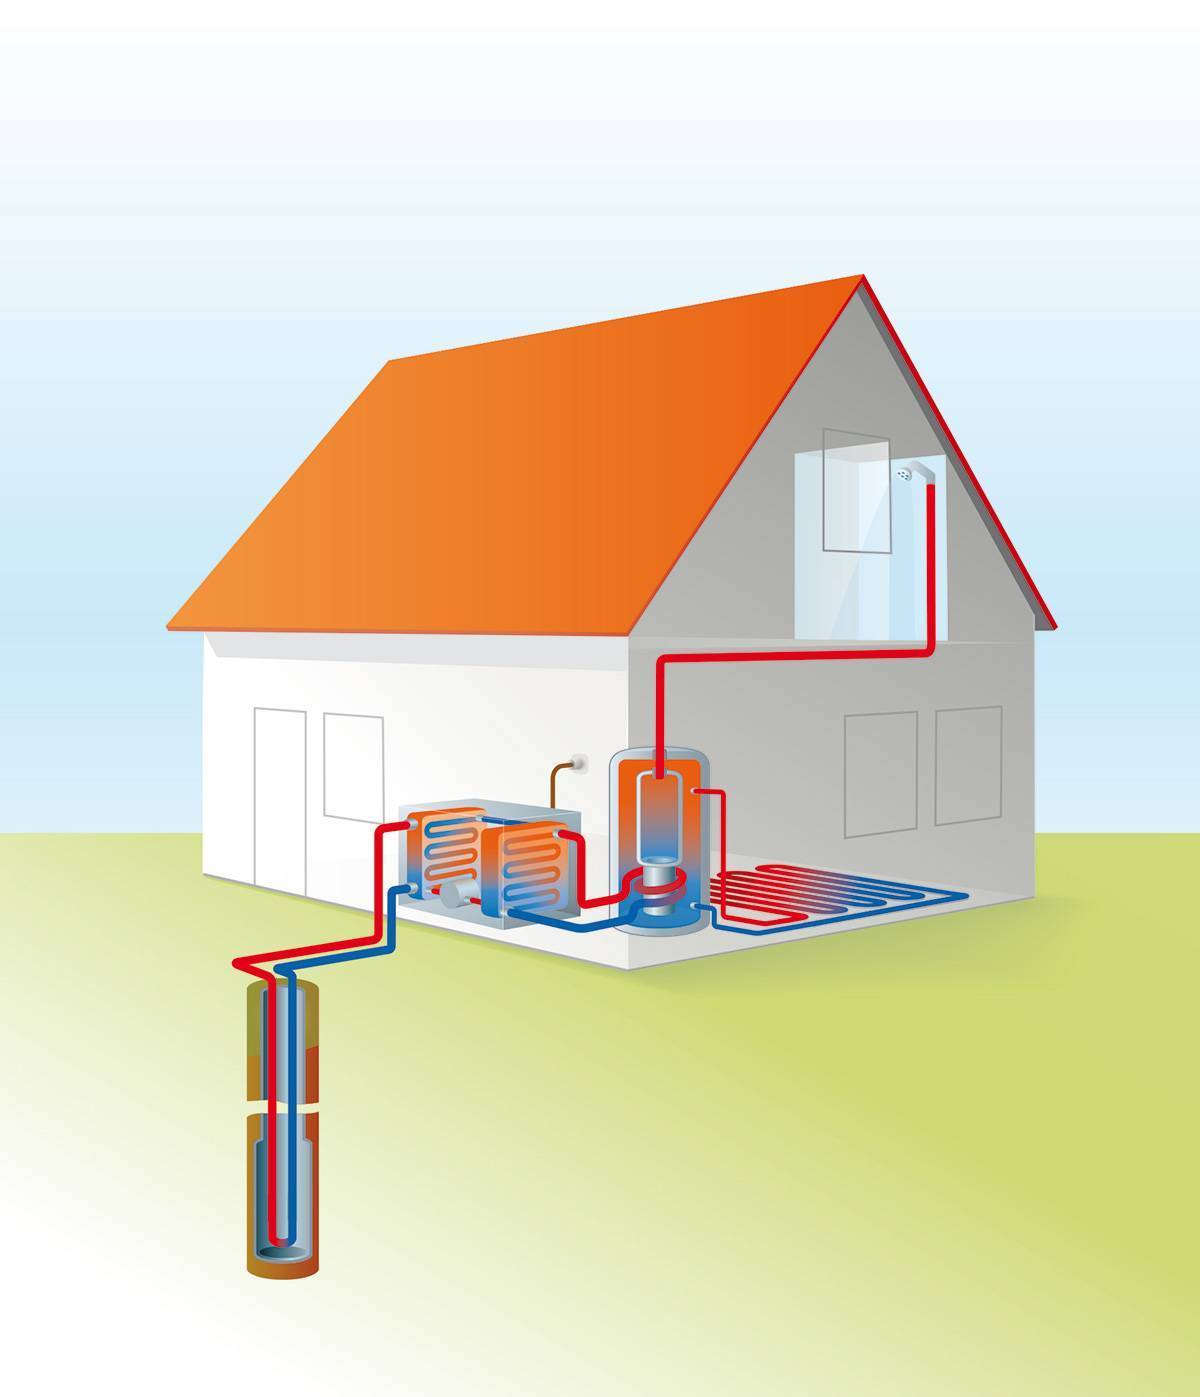 Альтернативное отопление для частного дома: виды источников, способы установки системы в жилище своими руками, схемы